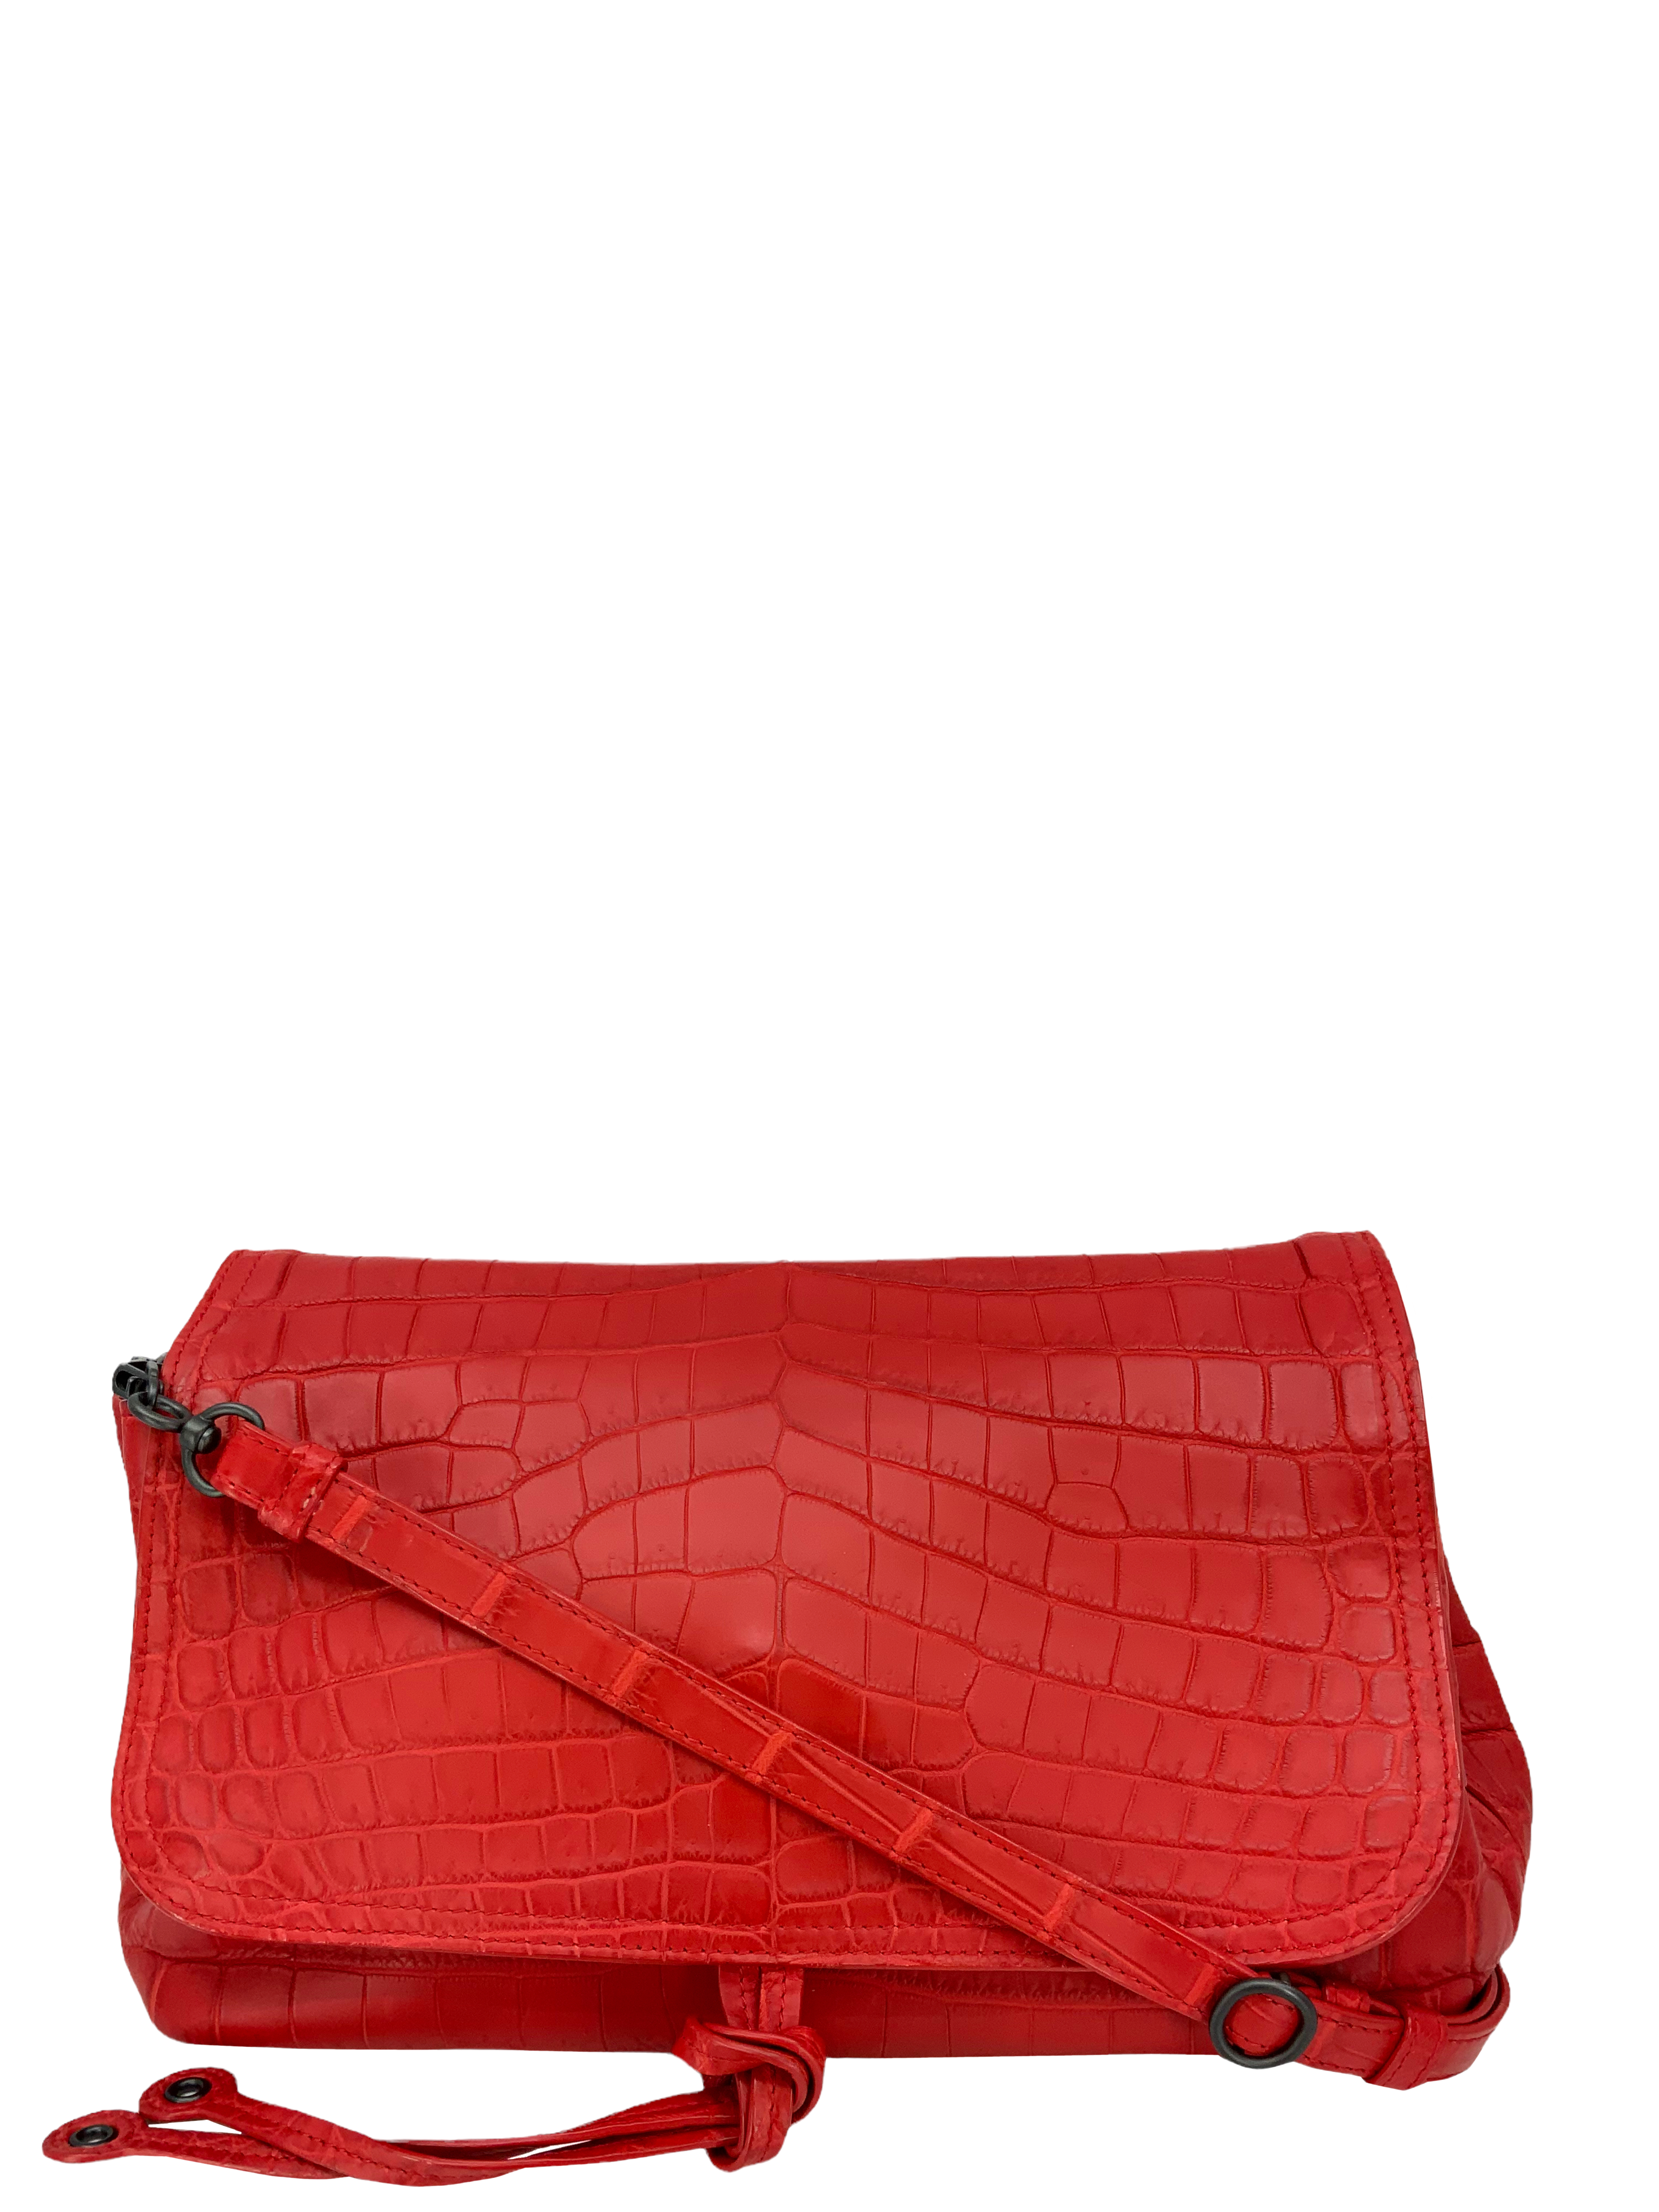 Bags, Brand New Crocodile Handbag